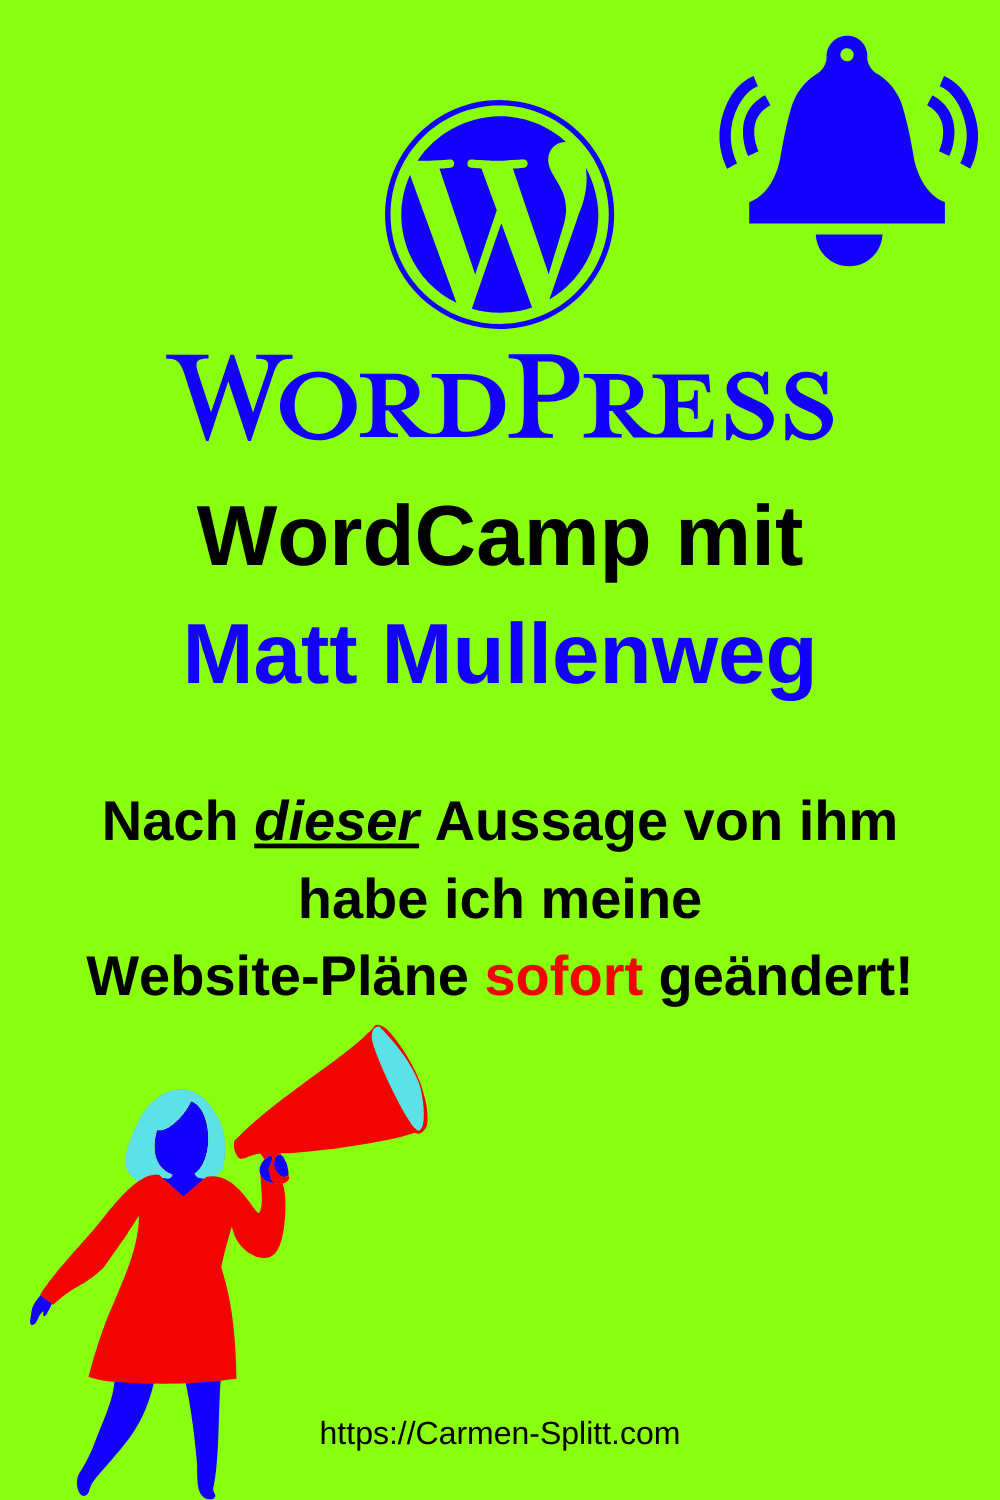 Mein erstes WordCamp mit Matt Mullenweg war super!